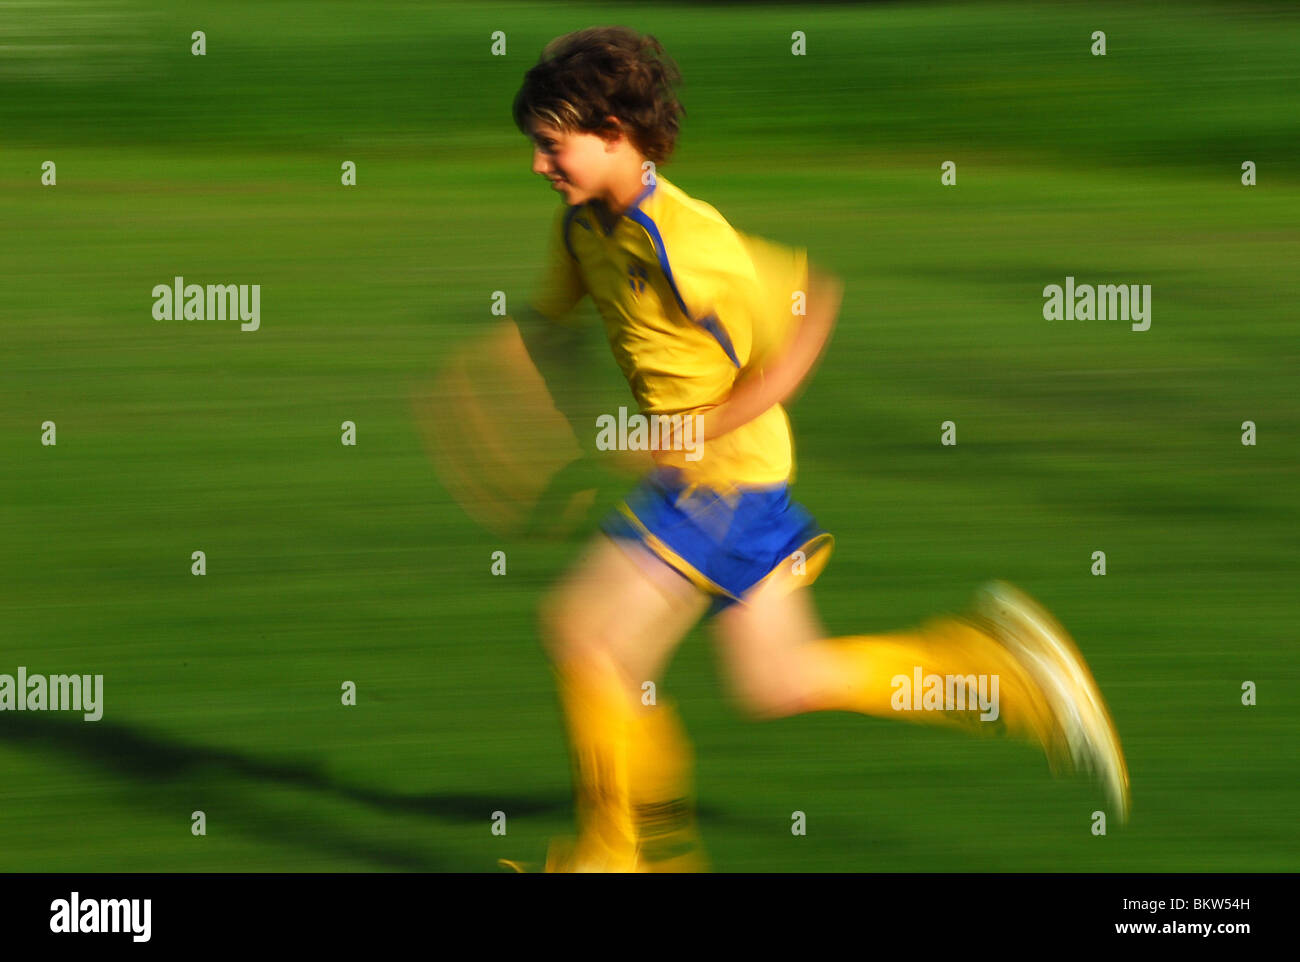 Soccerplayer running Stock Photo